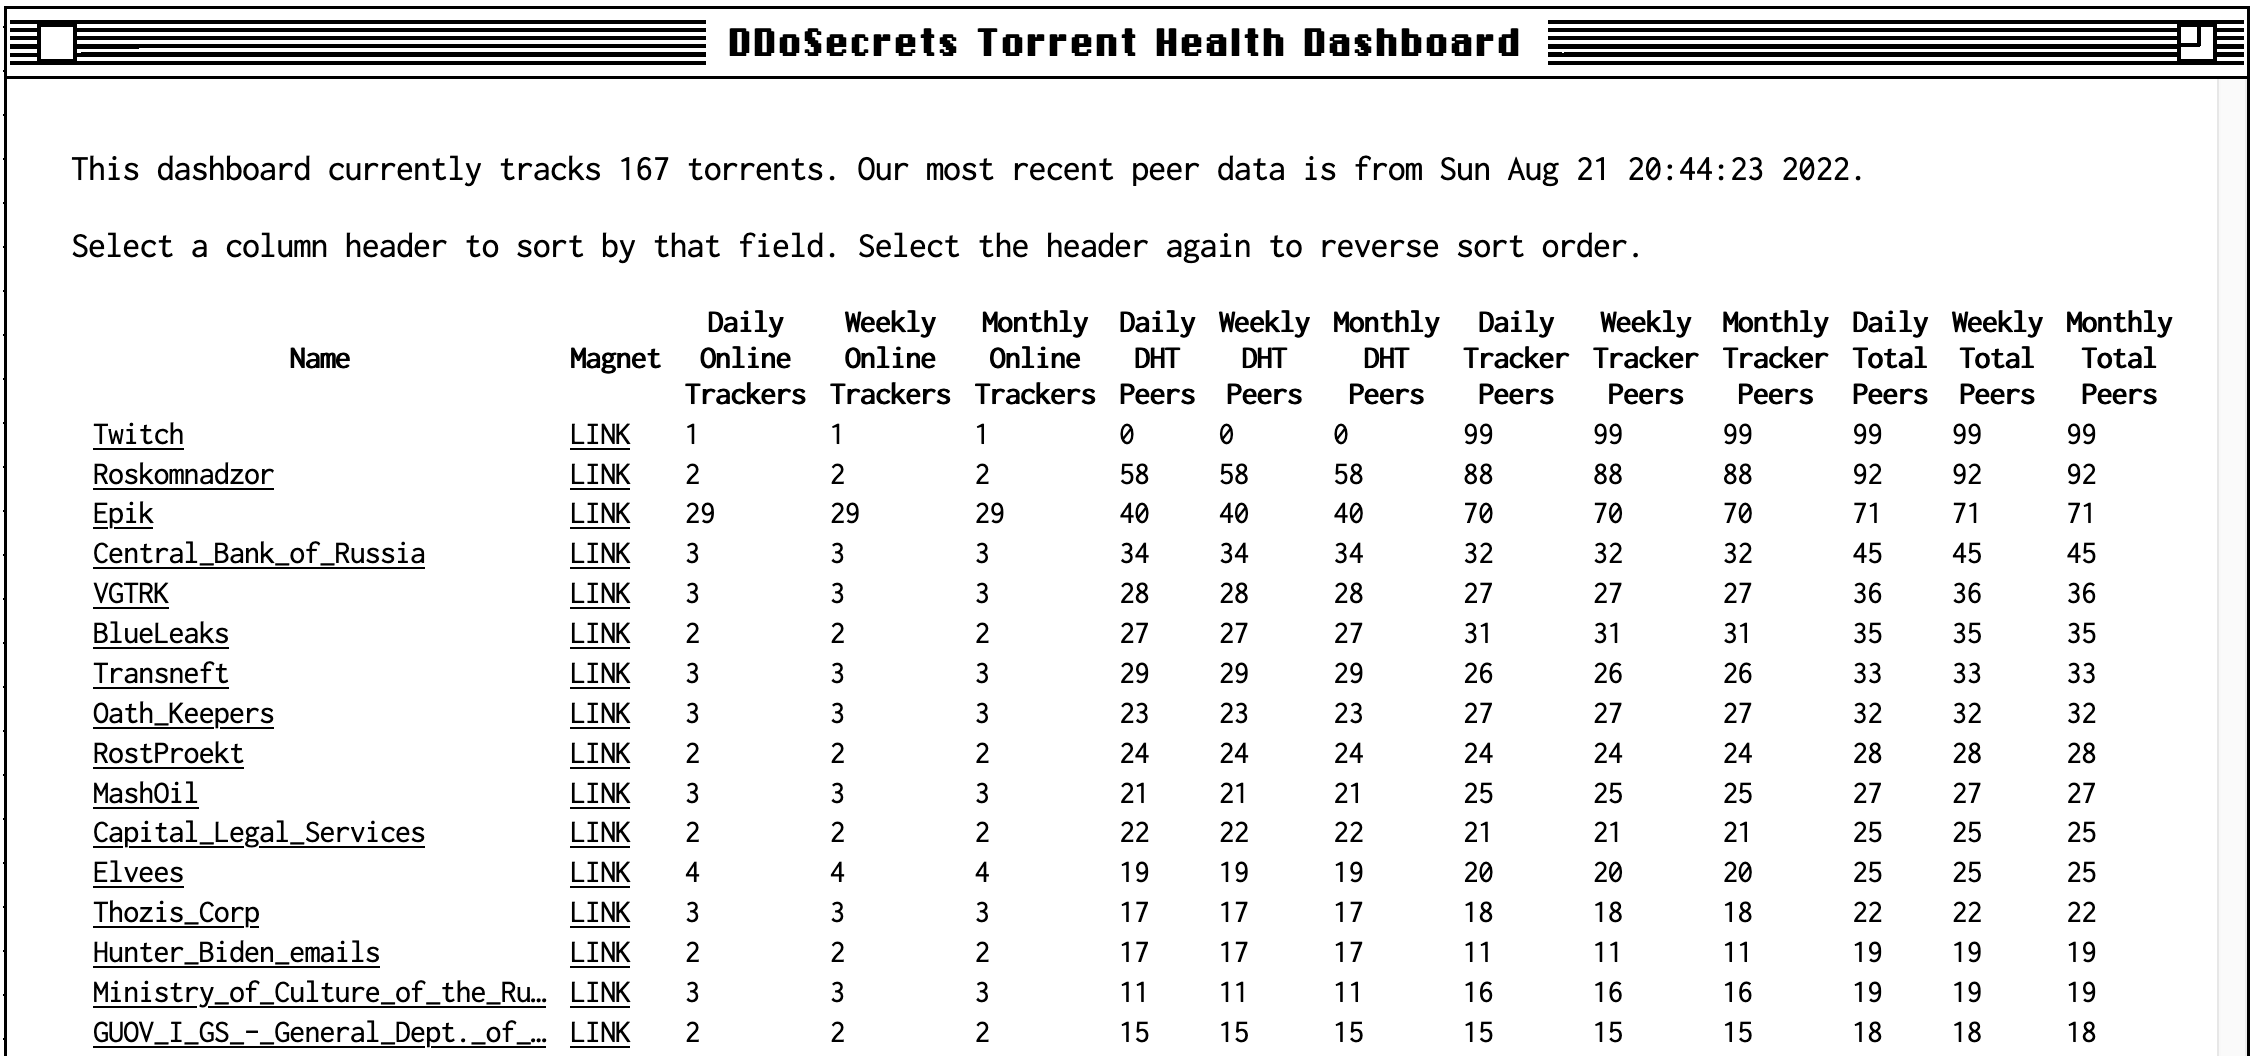 Screenshot of the DDoSecrets torrent health dashboard